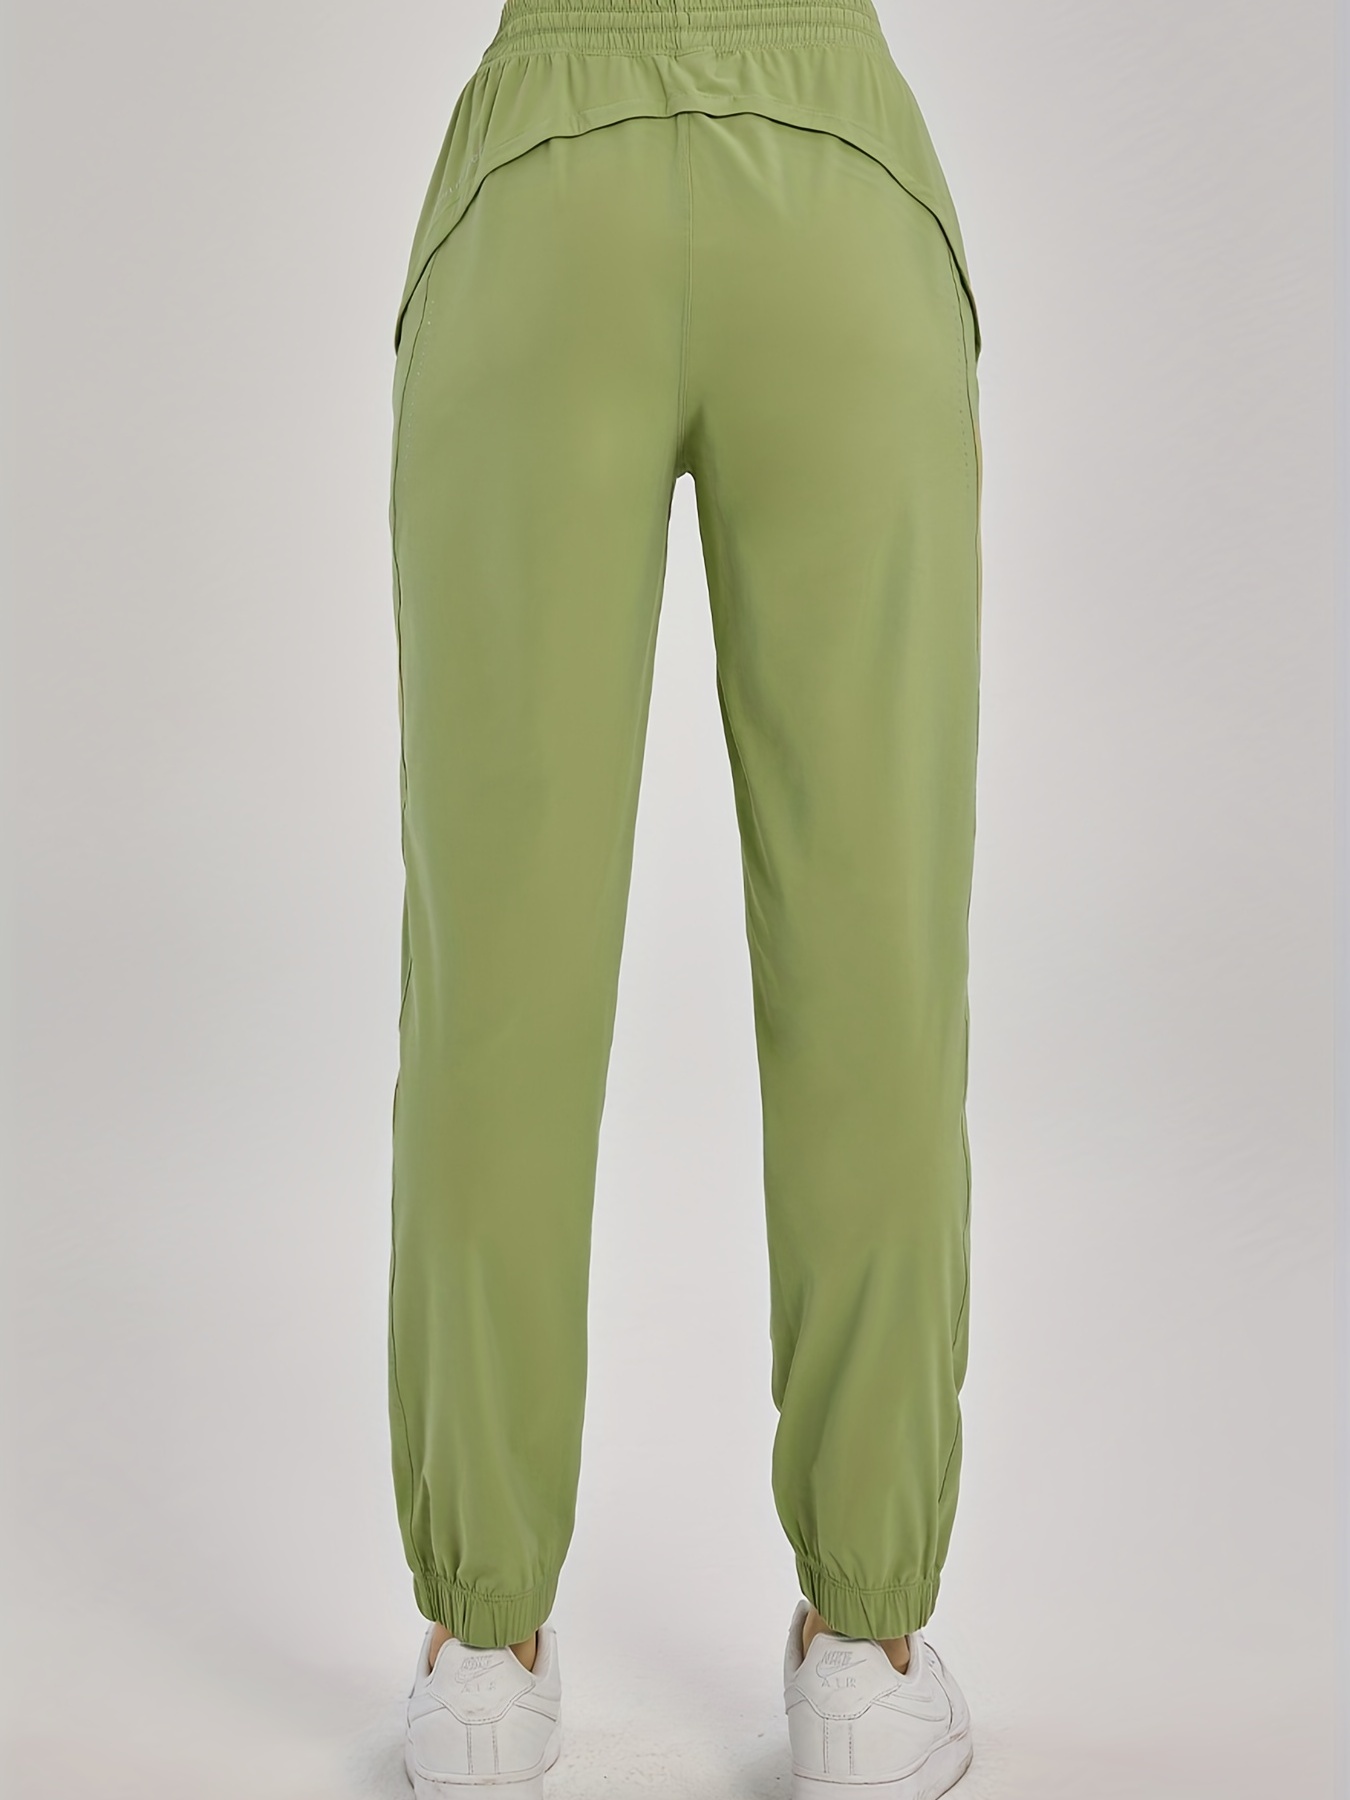 Joggers y Pants deportivos de color verde para mujer